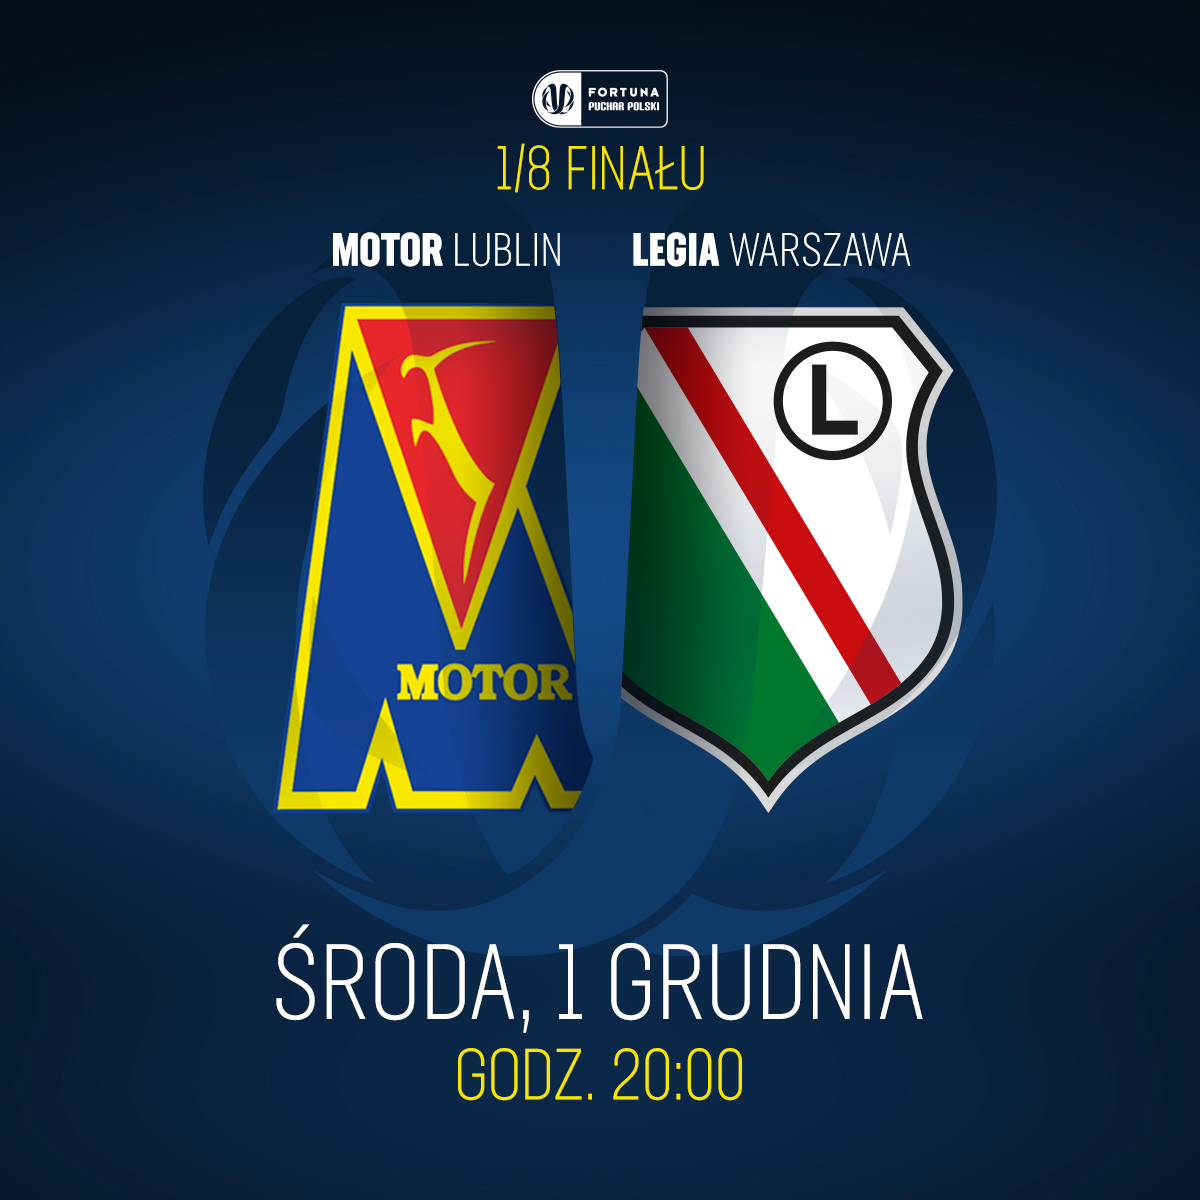 Bilety na mecz z Legią Warszawa | Motor Lublin S.A.